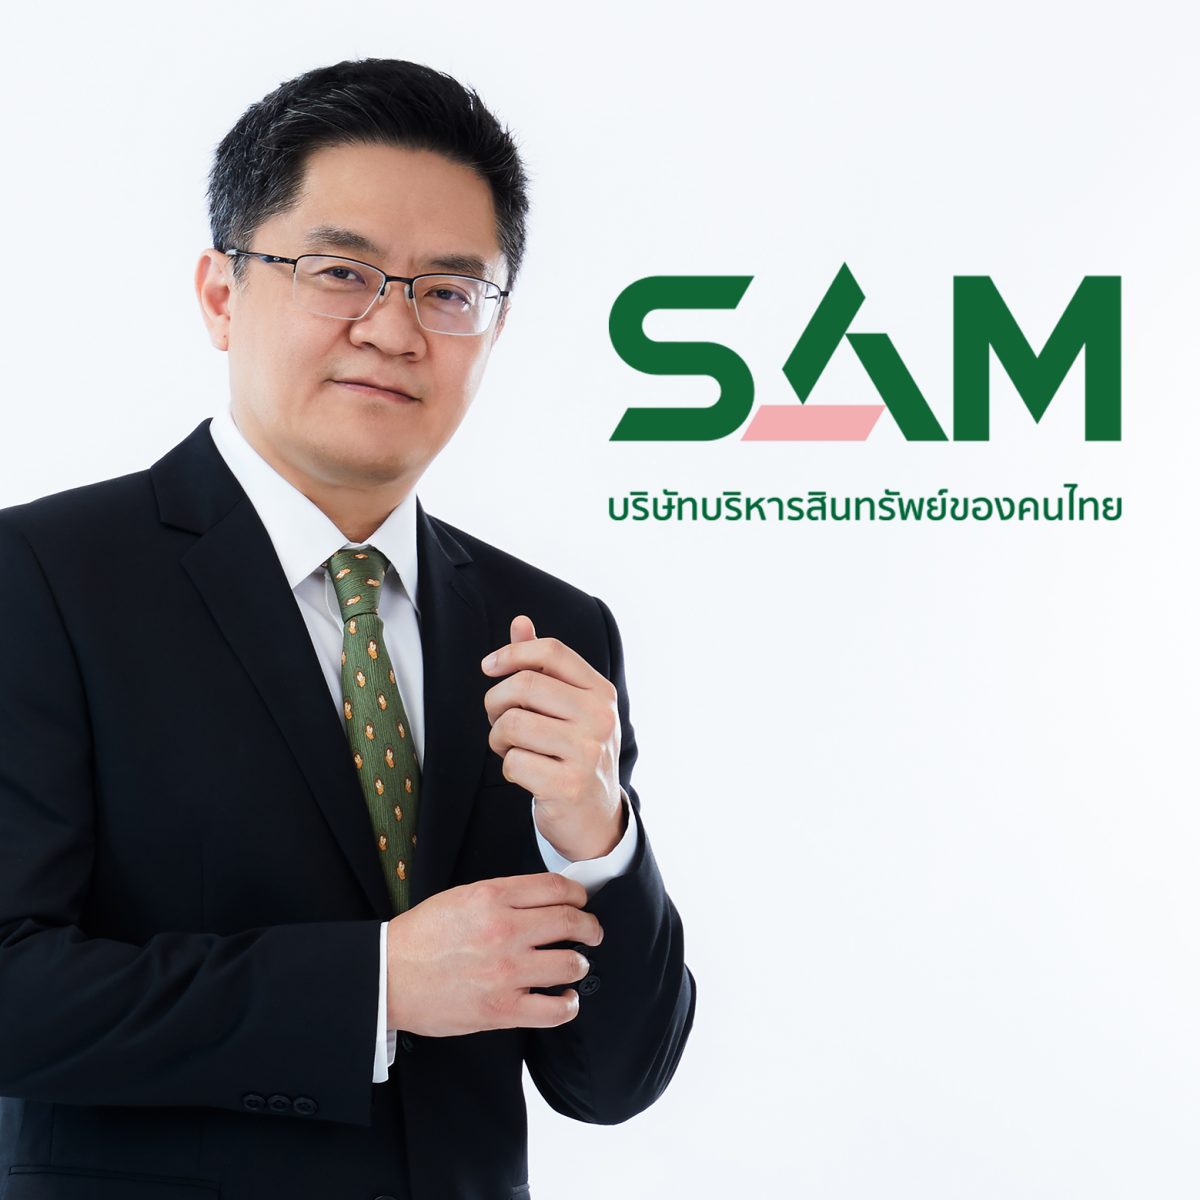 SAM บริษัทบริหารสินทรัพย์ของคนไทย จัดประมูลทรัพย์ NPA ทั้งทรัพย์อยู่อาศัยและทรัพย์ลงทุนทั่วไทยนับร้อยรายการ มูลค่ารวมกว่า 400